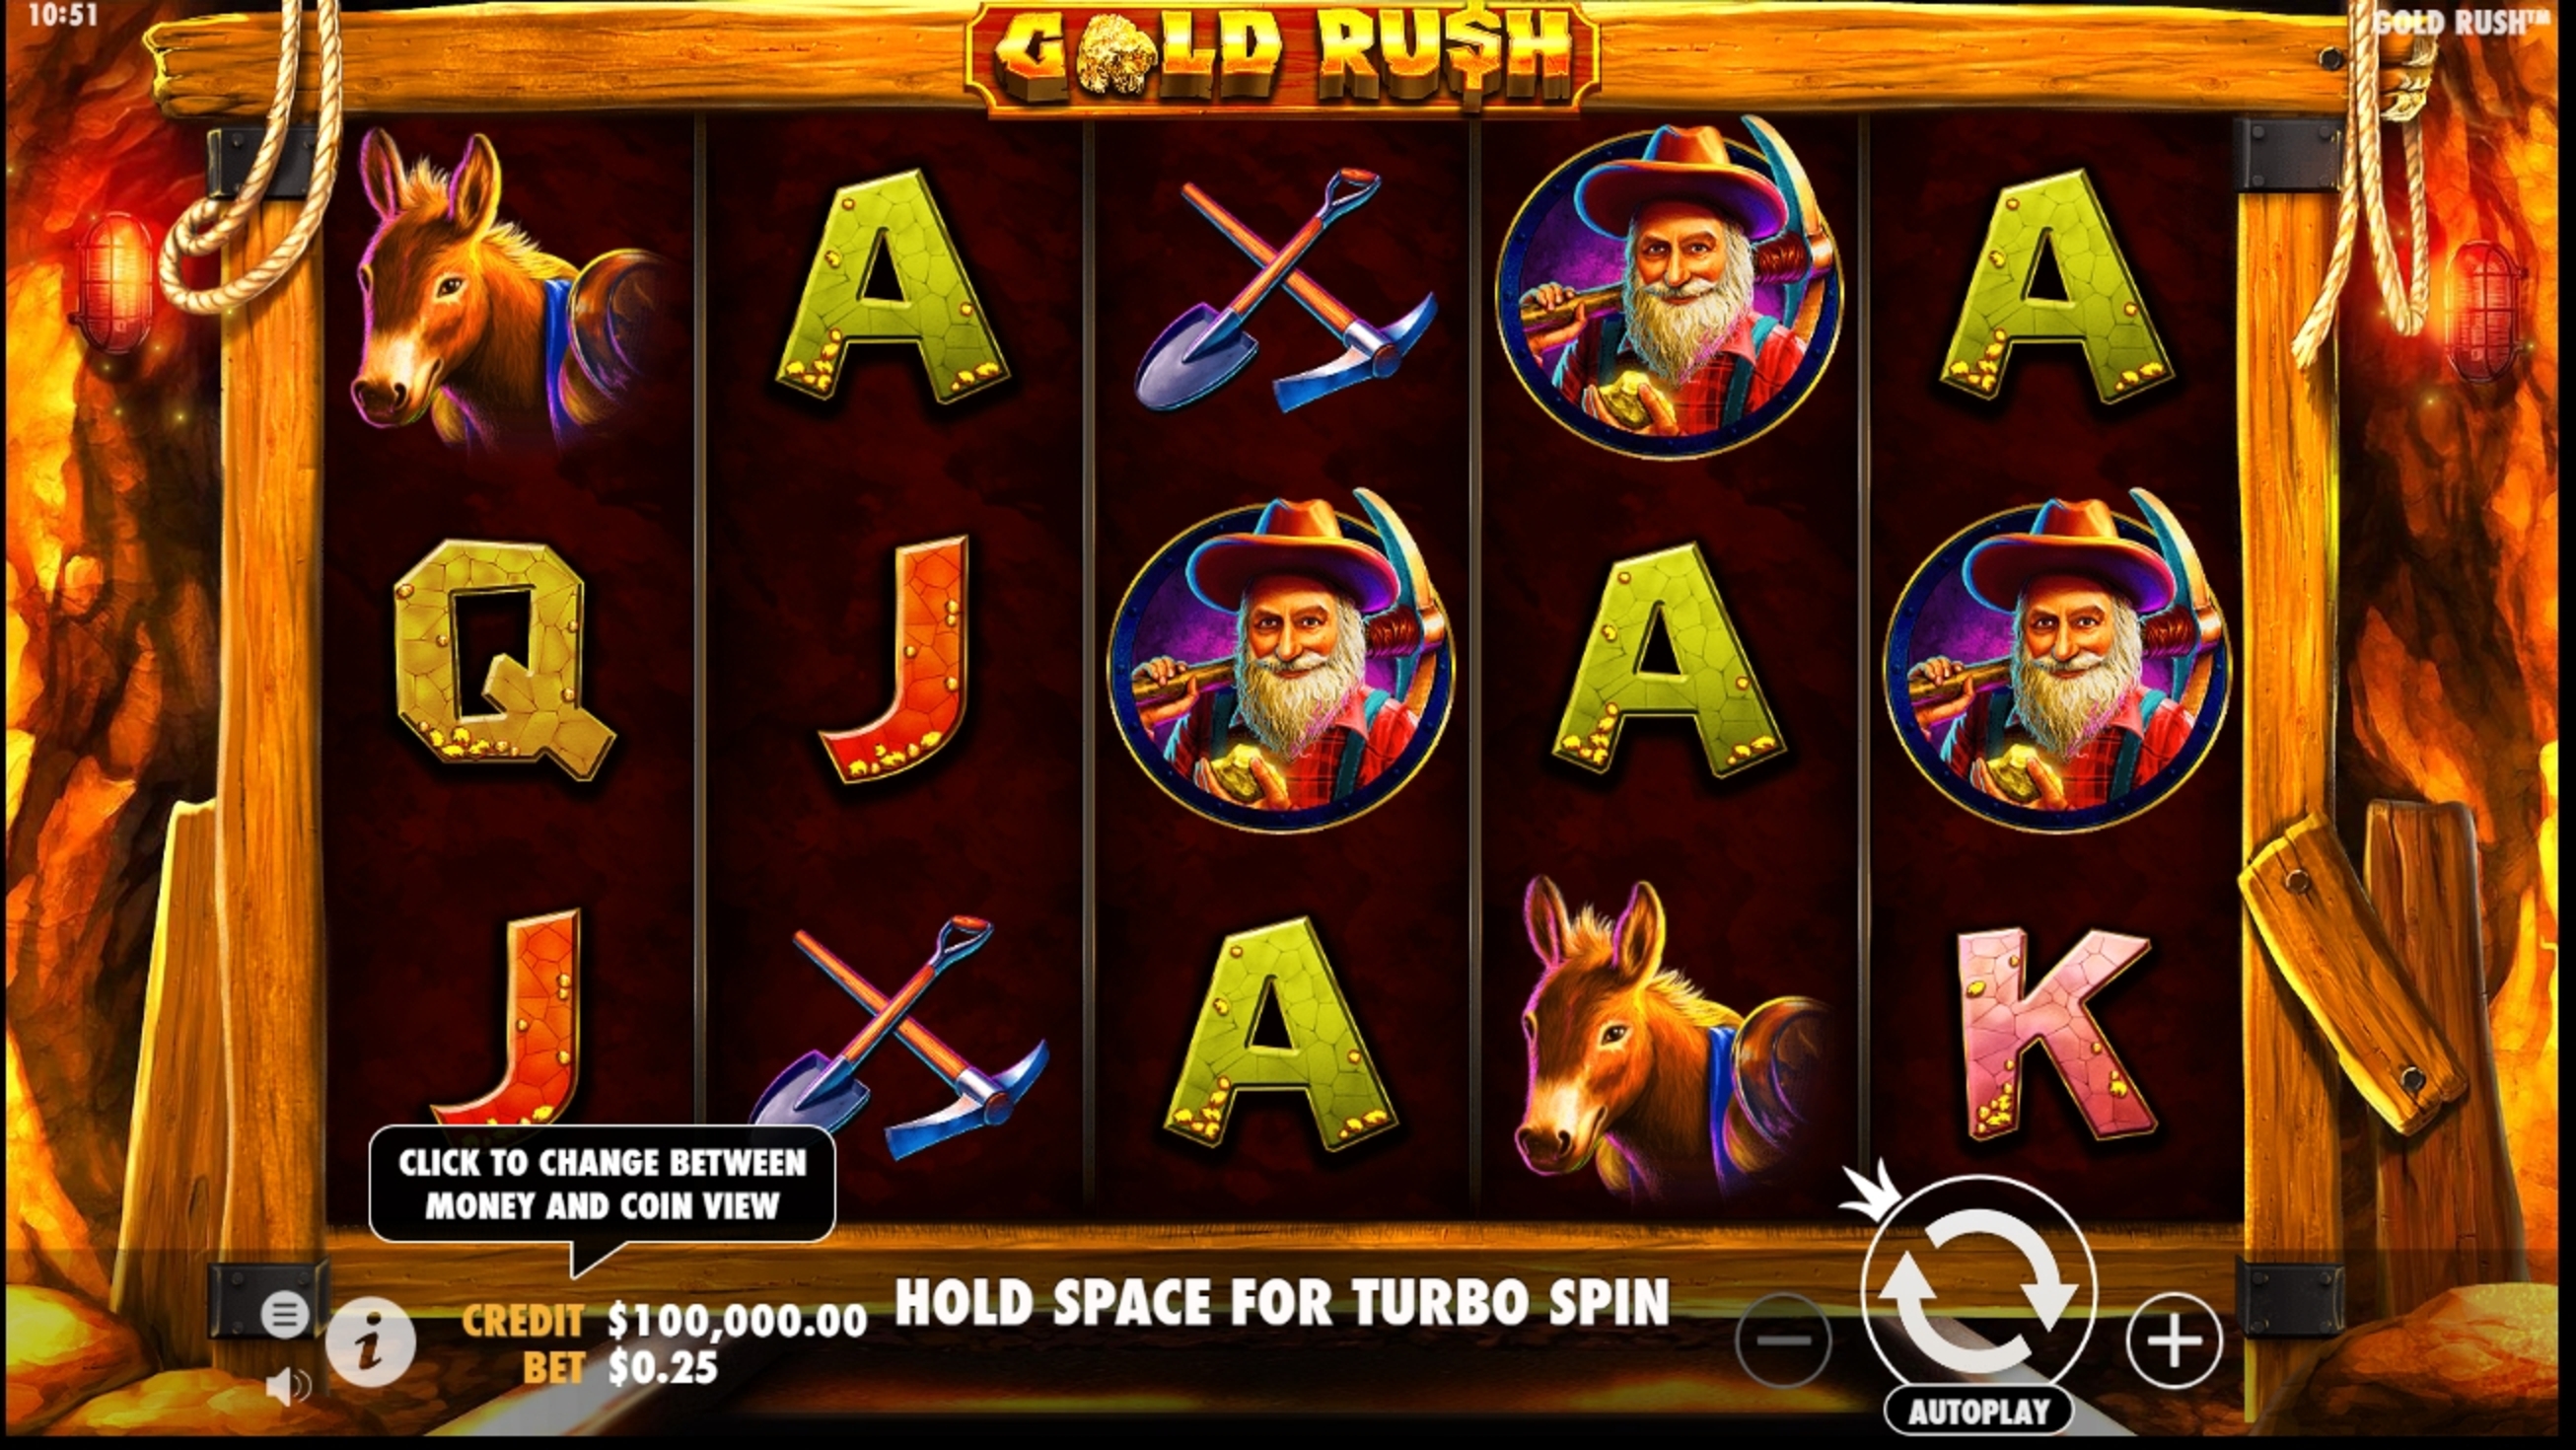 Gold Rush Slot Machine Demo